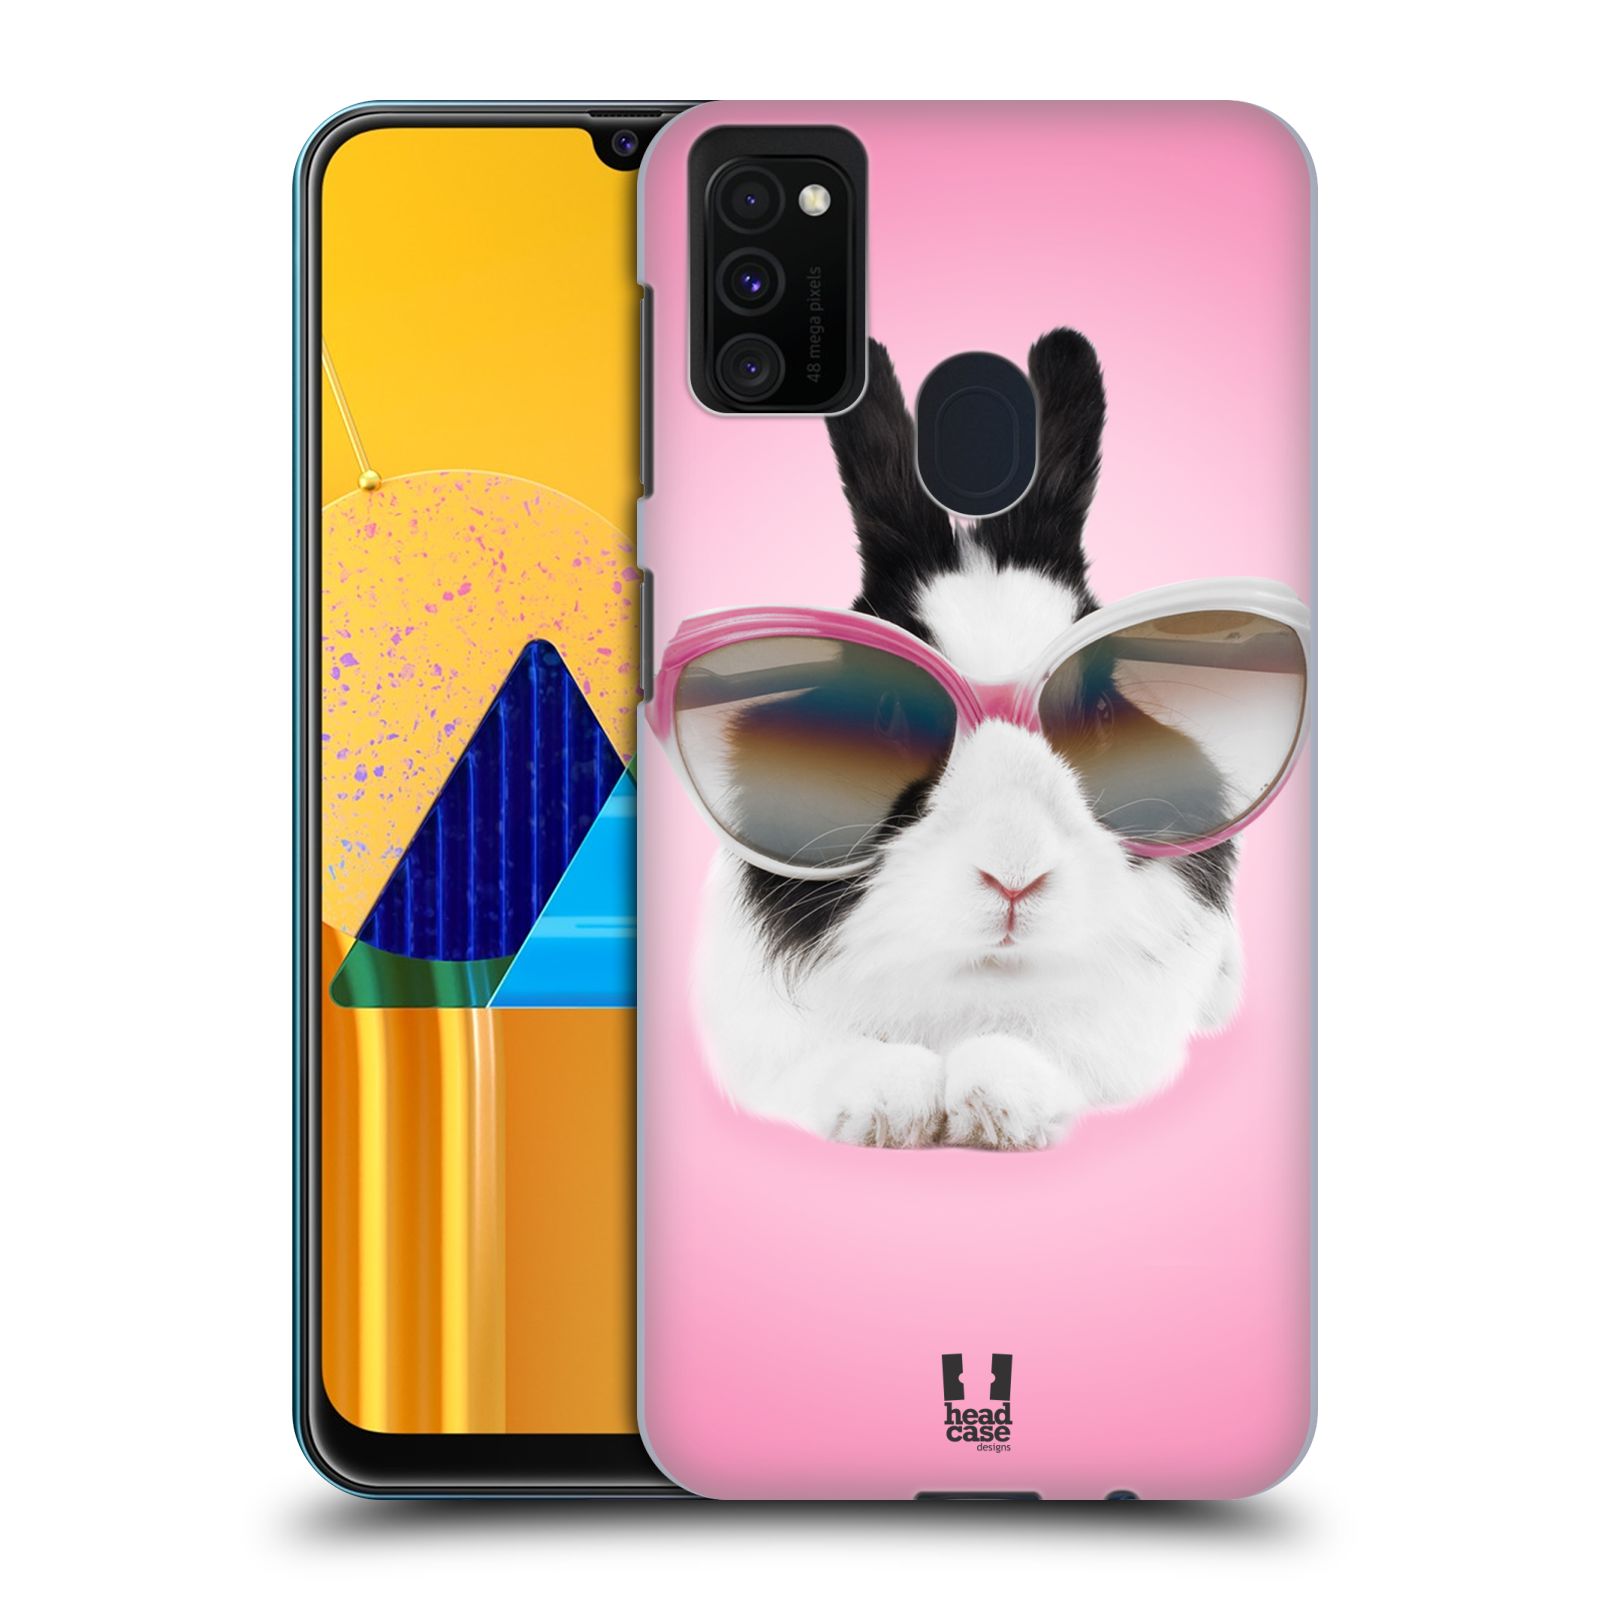 Plastový obal HEAD CASE na mobil Samsung Galaxy M30s vzor Legrační zvířátka roztomilý králíček s brýlemi růžová